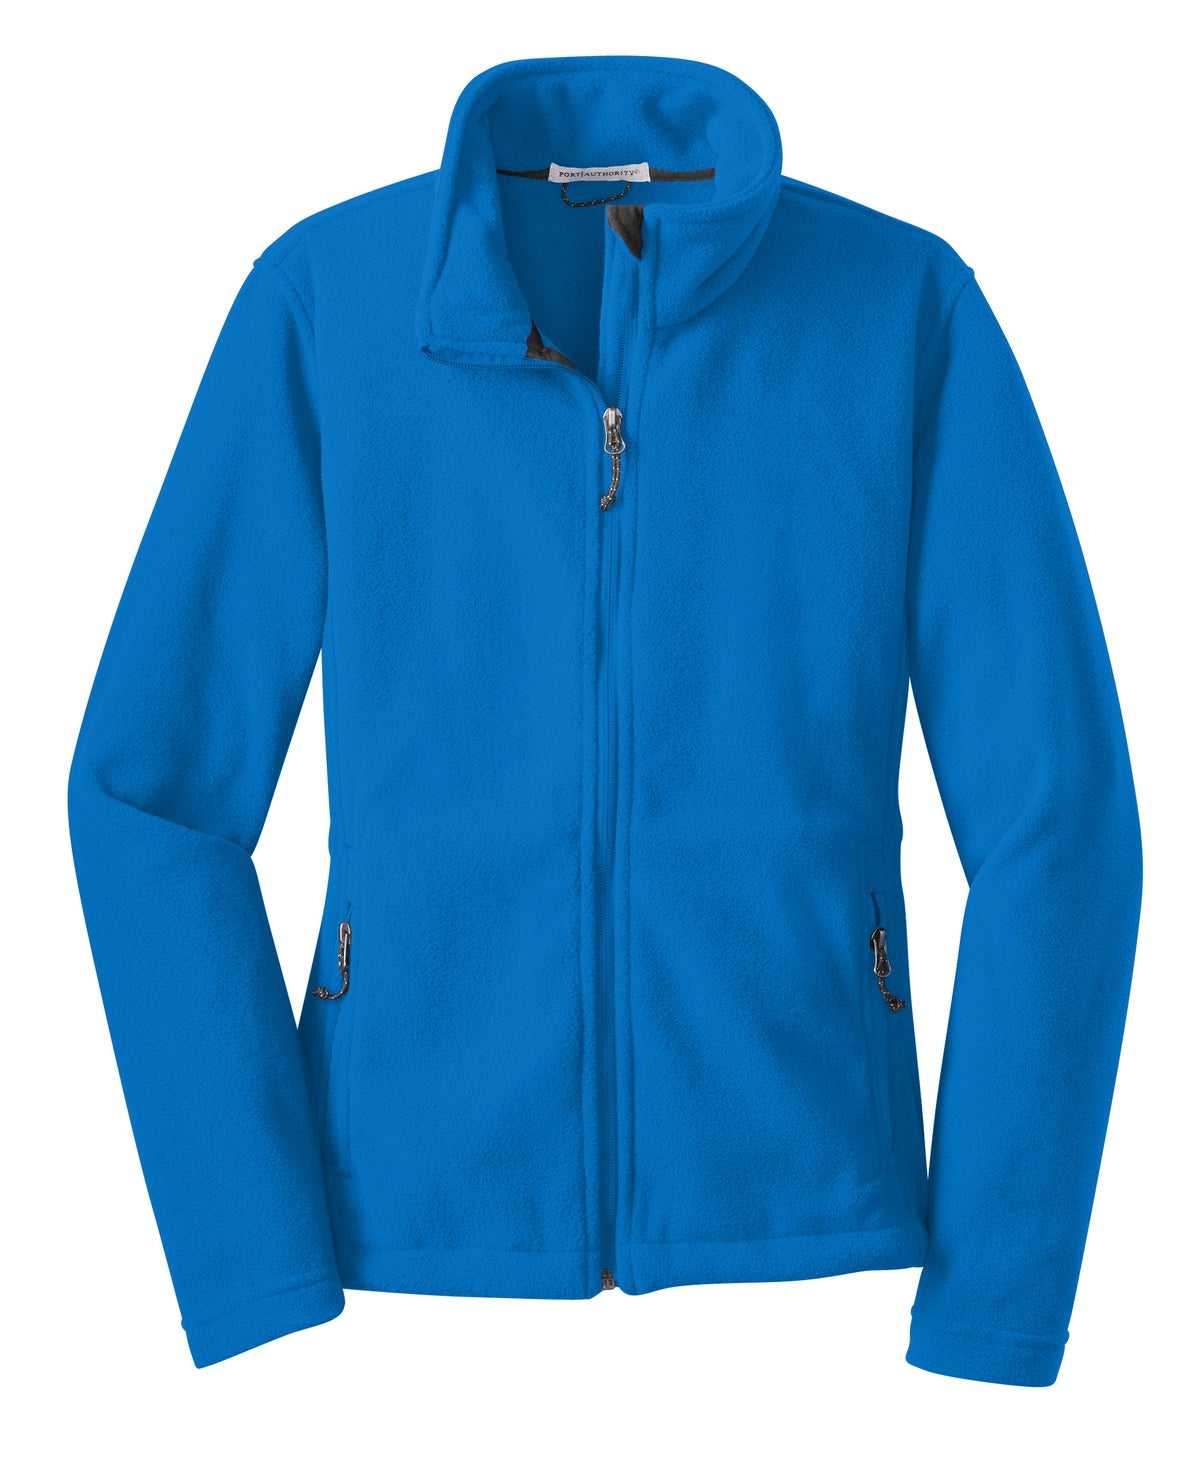 Port Authority L217 Ladies Value Fleece Jacket - Skydiver Blue - HIT a Double - 5